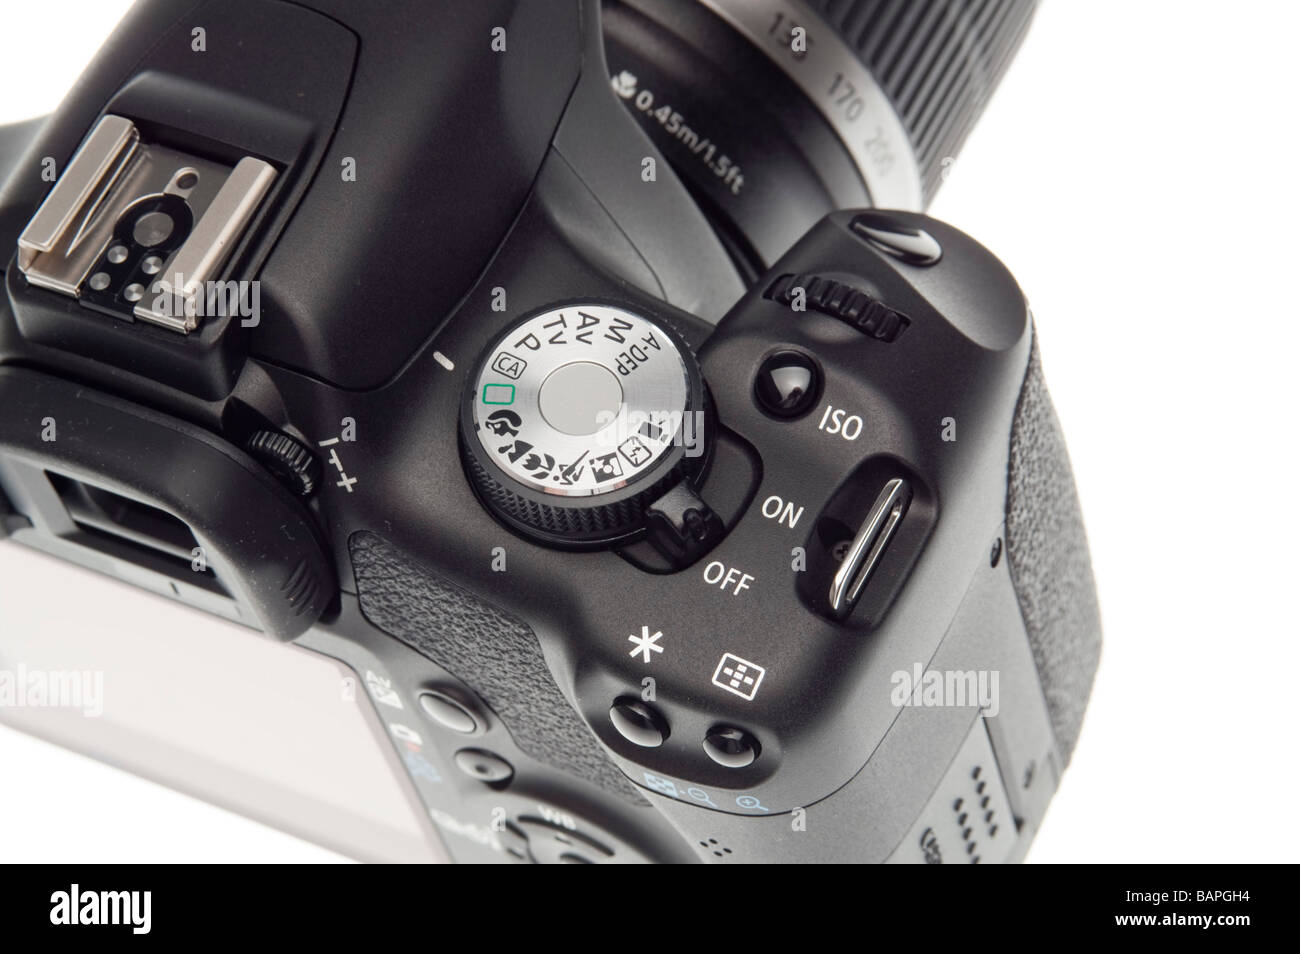 Appareil photo reflex numérique Canon EOS 500D HD video - molette de  commande et poignée Photo Stock - Alamy